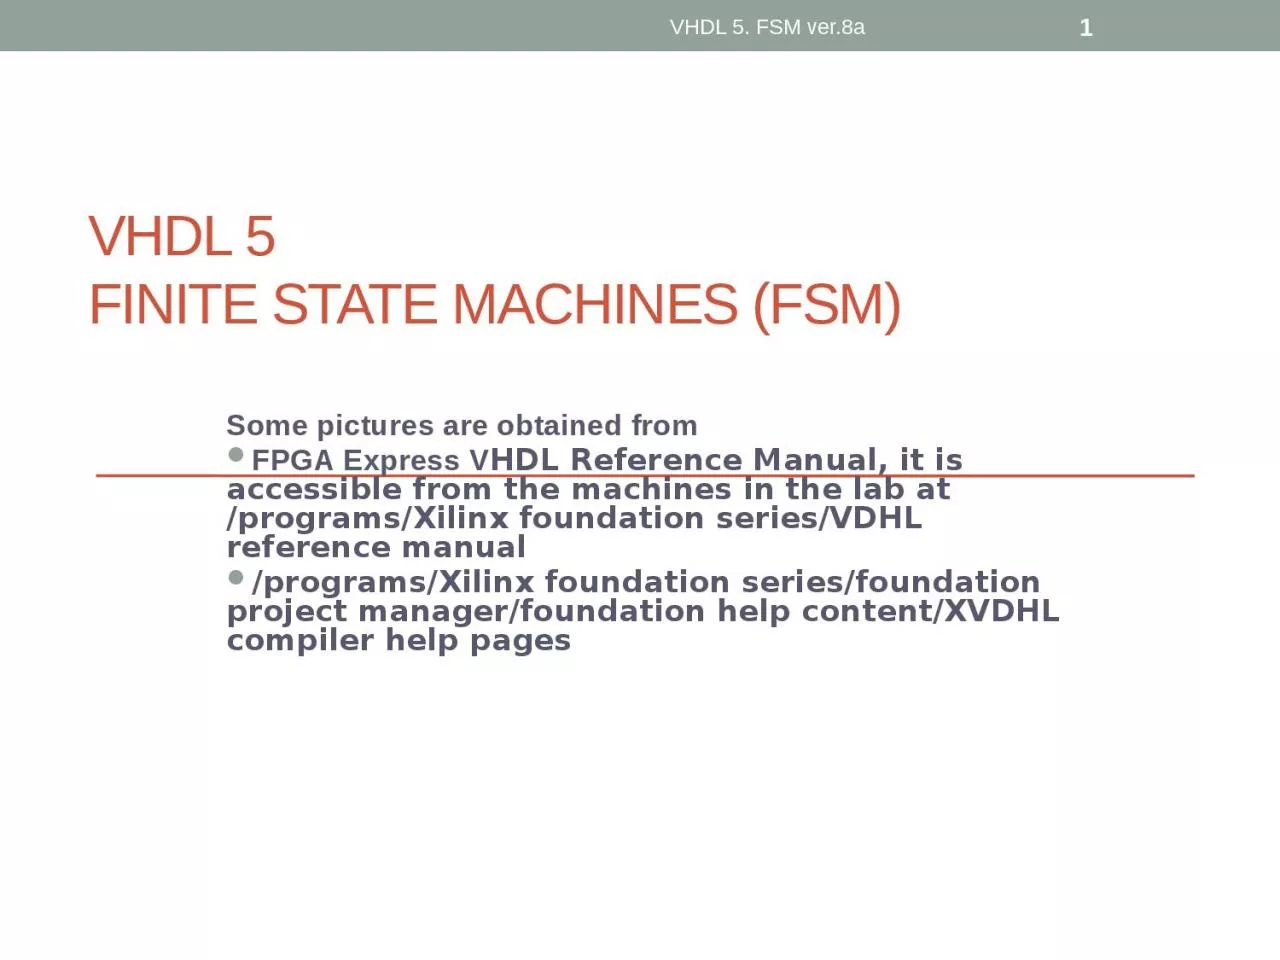 VHDL 5 FINITE STATE MACHINES (FSM)